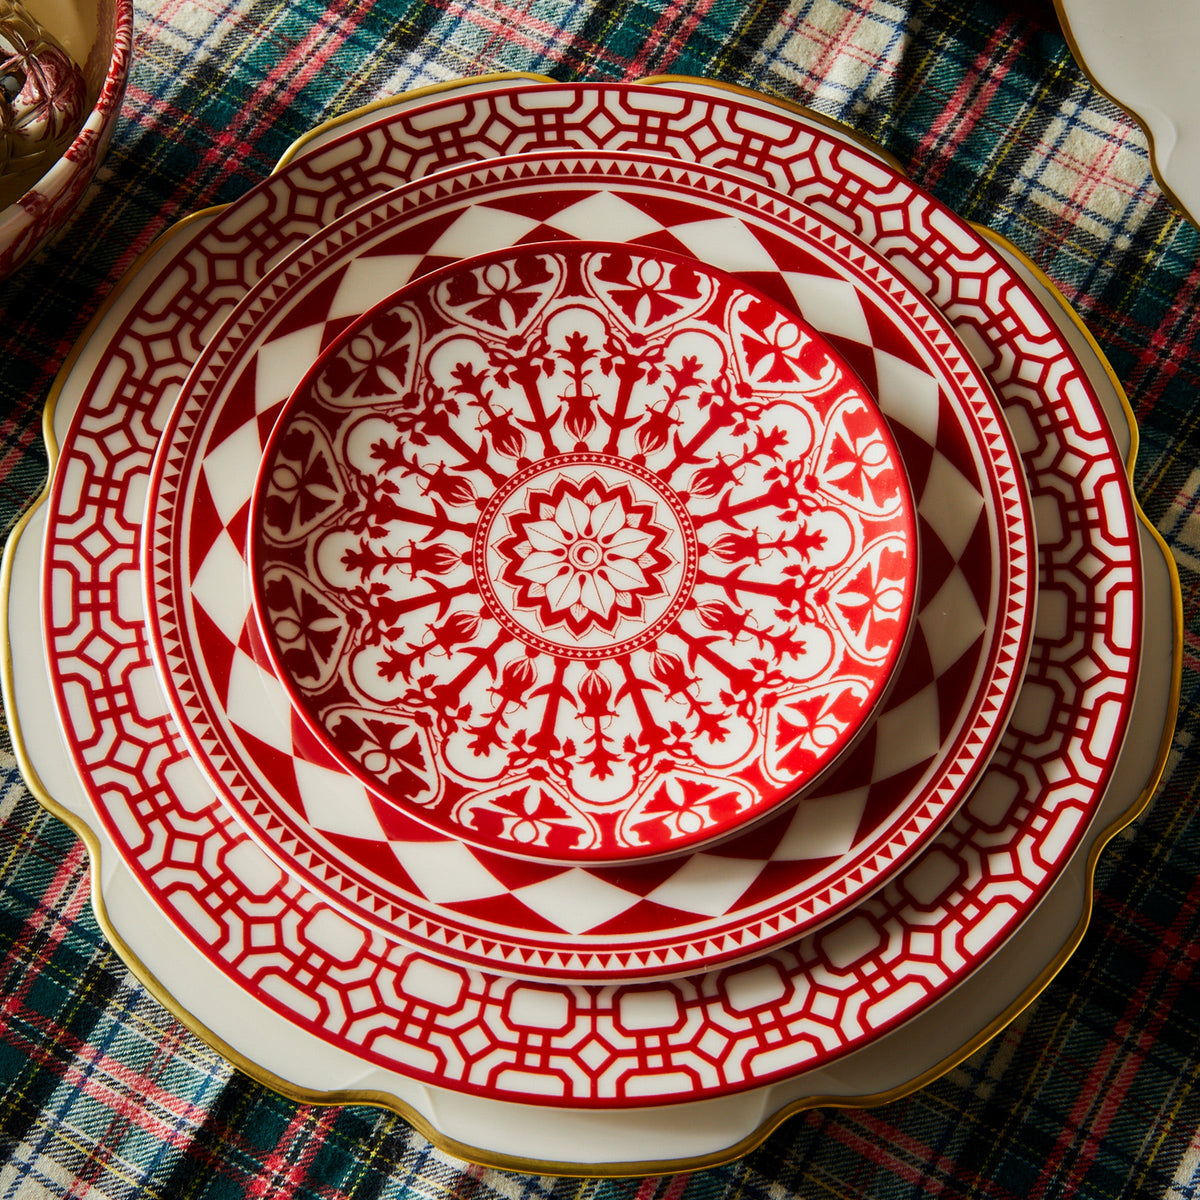 A Newport Garden Gate Crimson Dinner Plate from Caskata Artisanal Home on a plaid tablecloth featuring premium porcelain dinnerware.